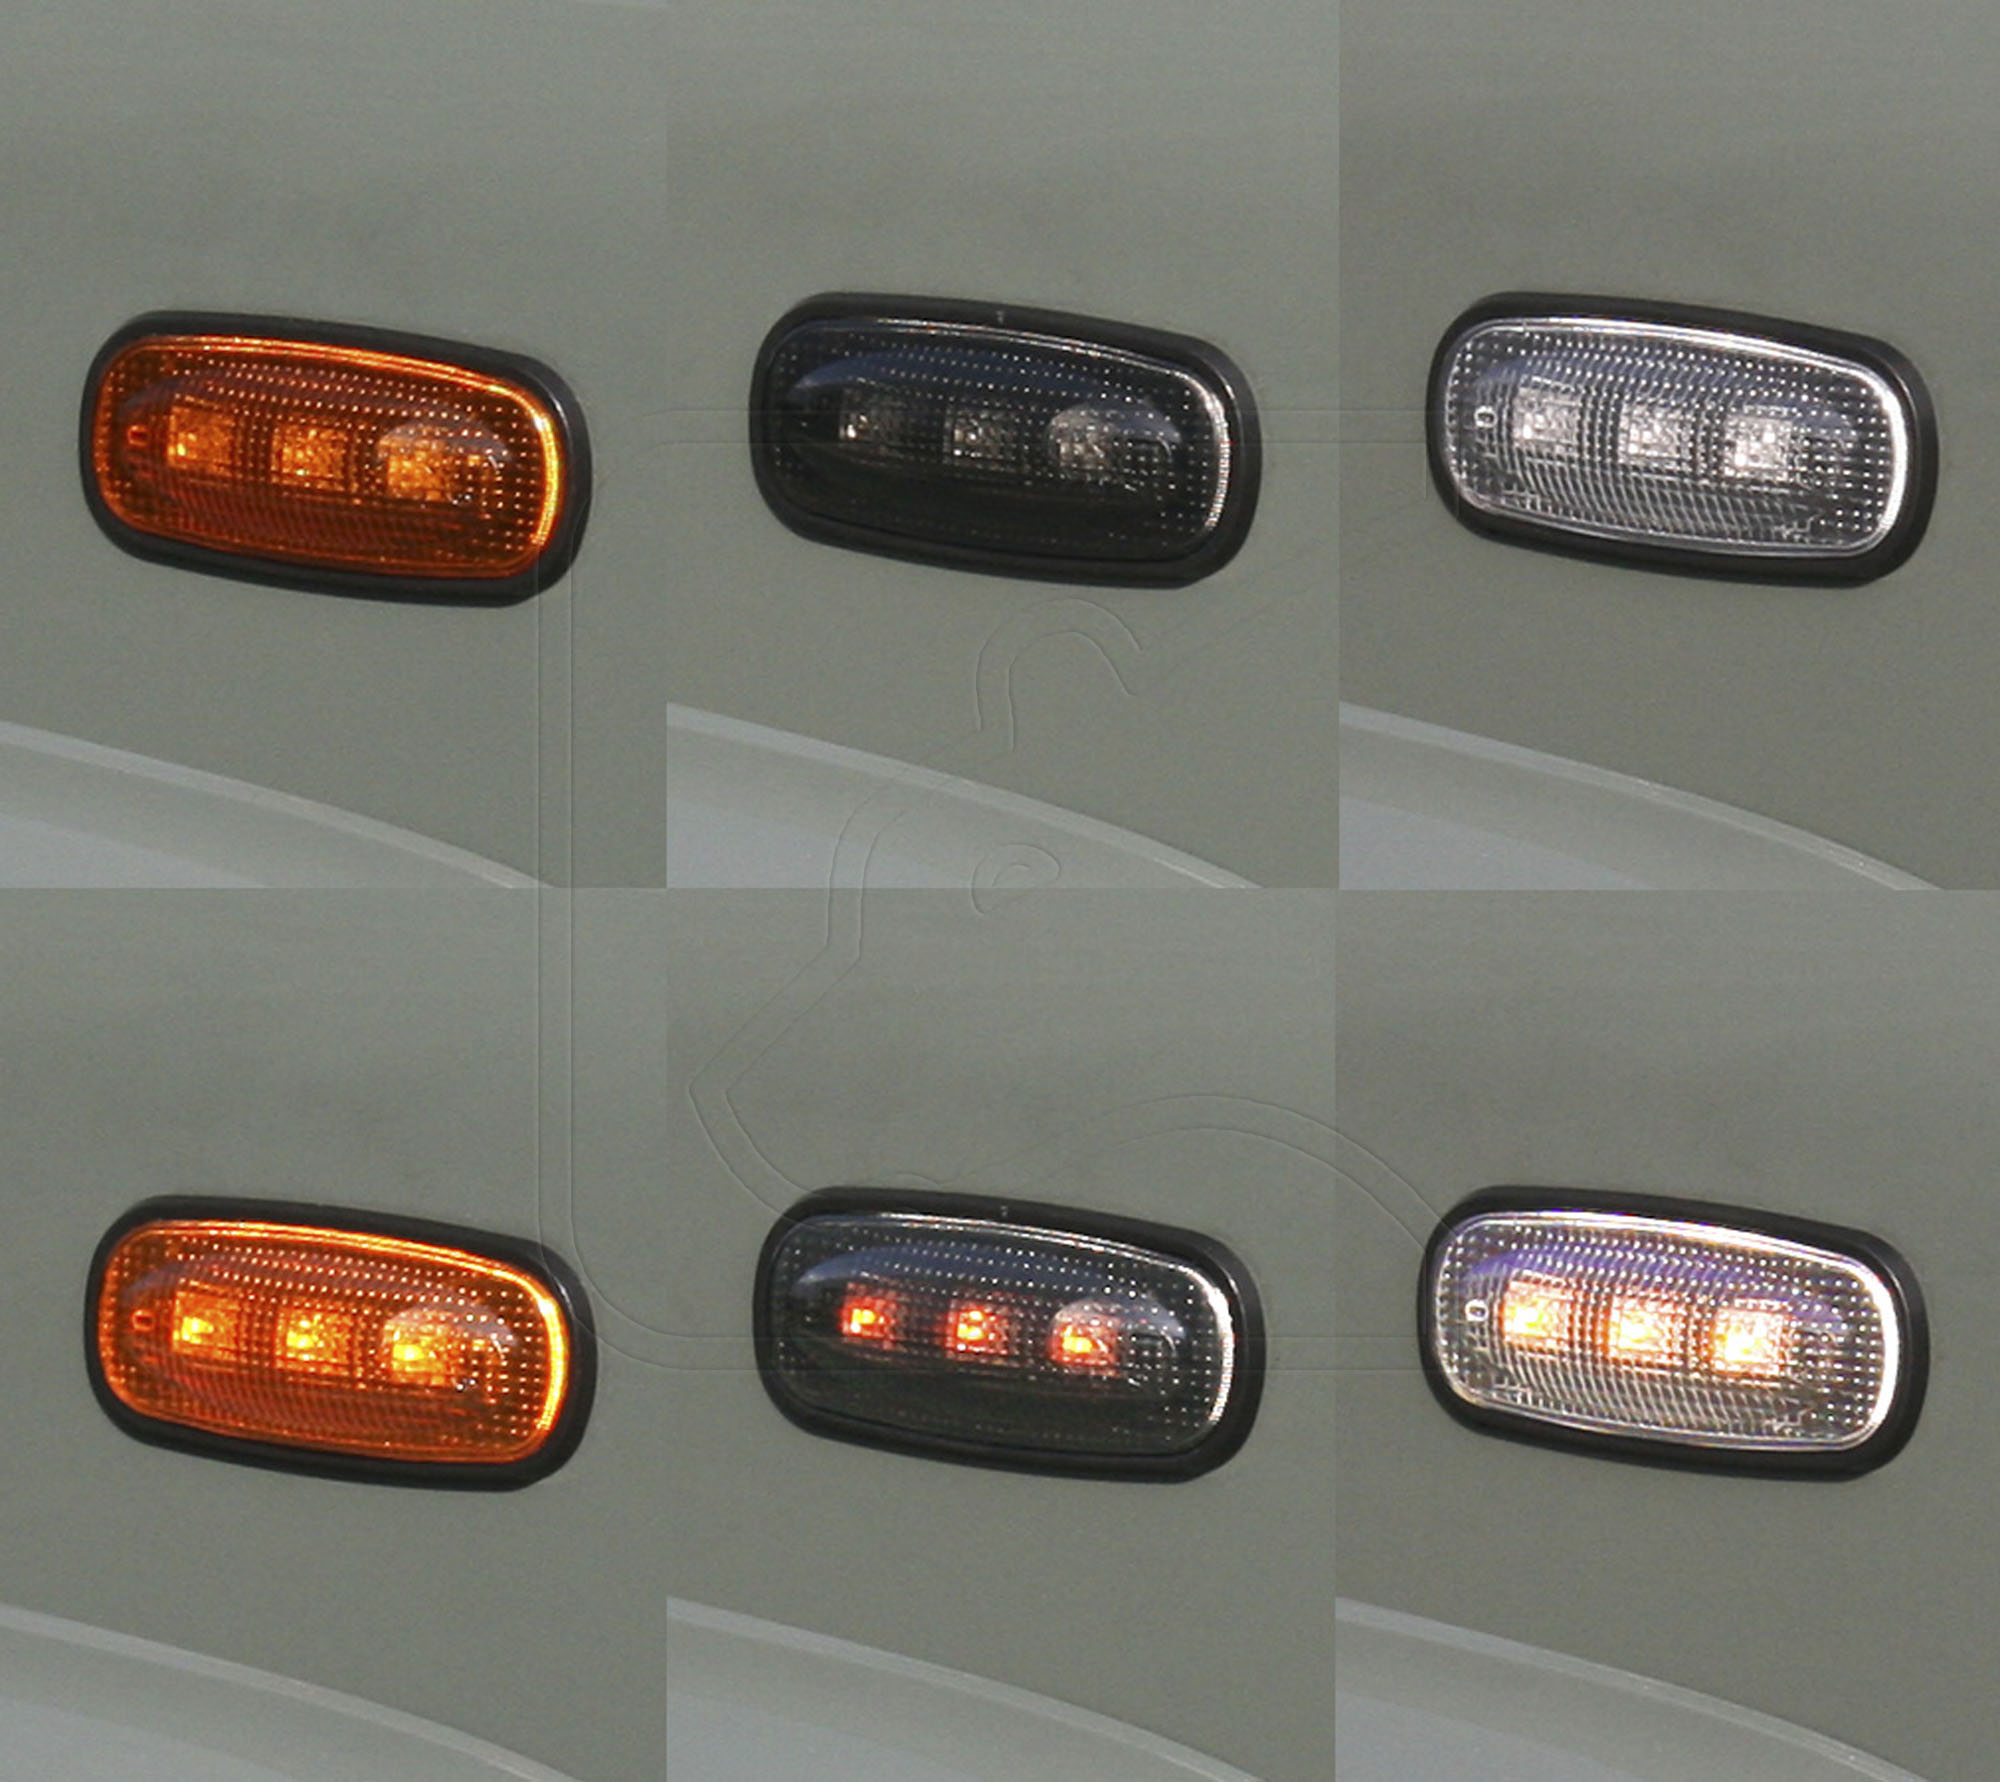 LED Rückfahrscheinwerfer weiß + Nebelschlußleuchte rot, Beleuchtung, Zubehör Defender, Fahrzeugtechnik